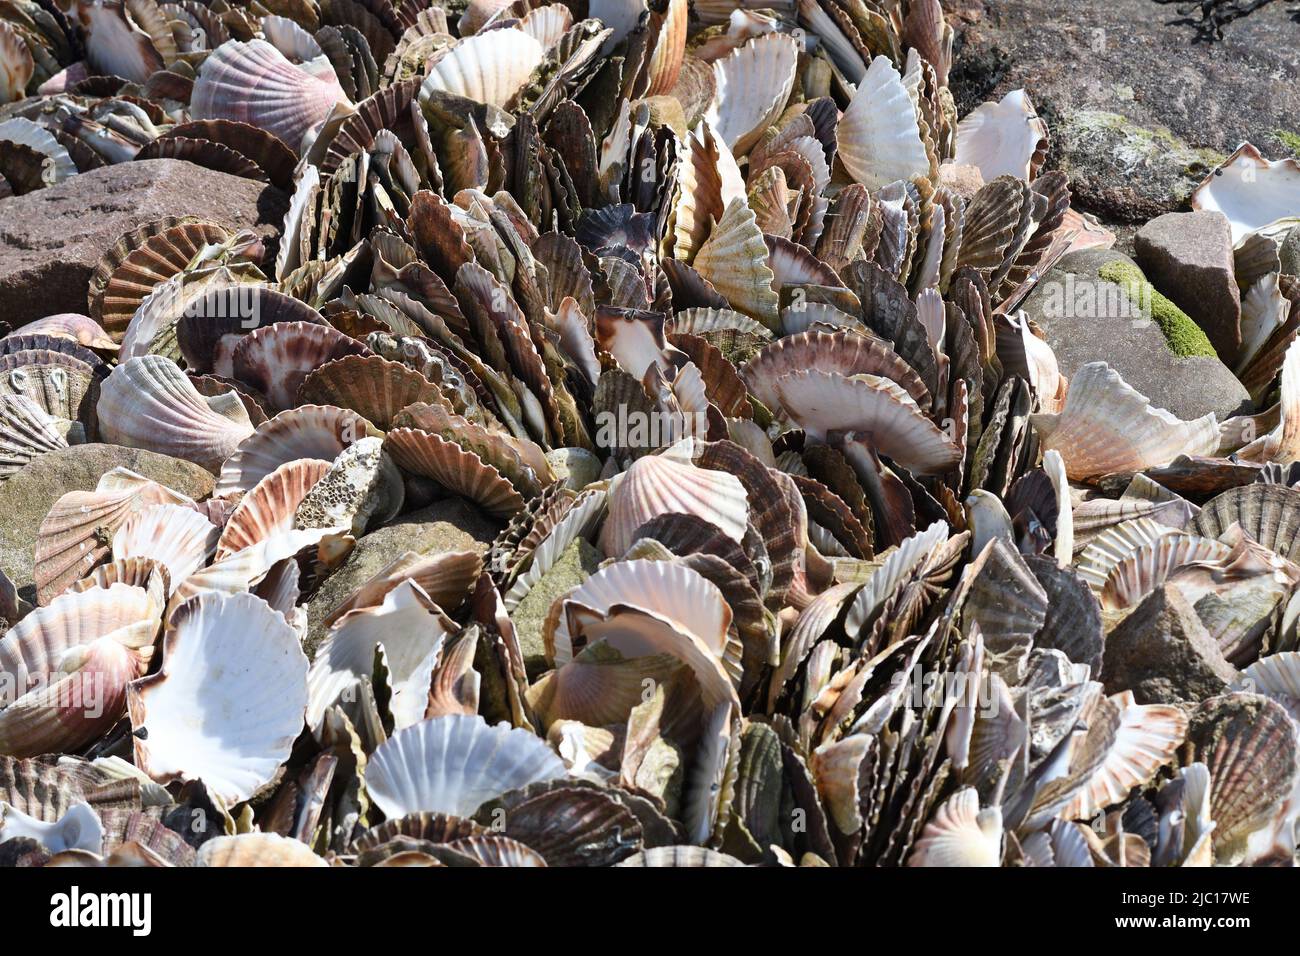 Grand pétoncle, pétoncle commun, coquille Saint-Jacques (Pecten maximus), nombreuses coquillages sur la plage, France, Bretagne, Erquy Banque D'Images